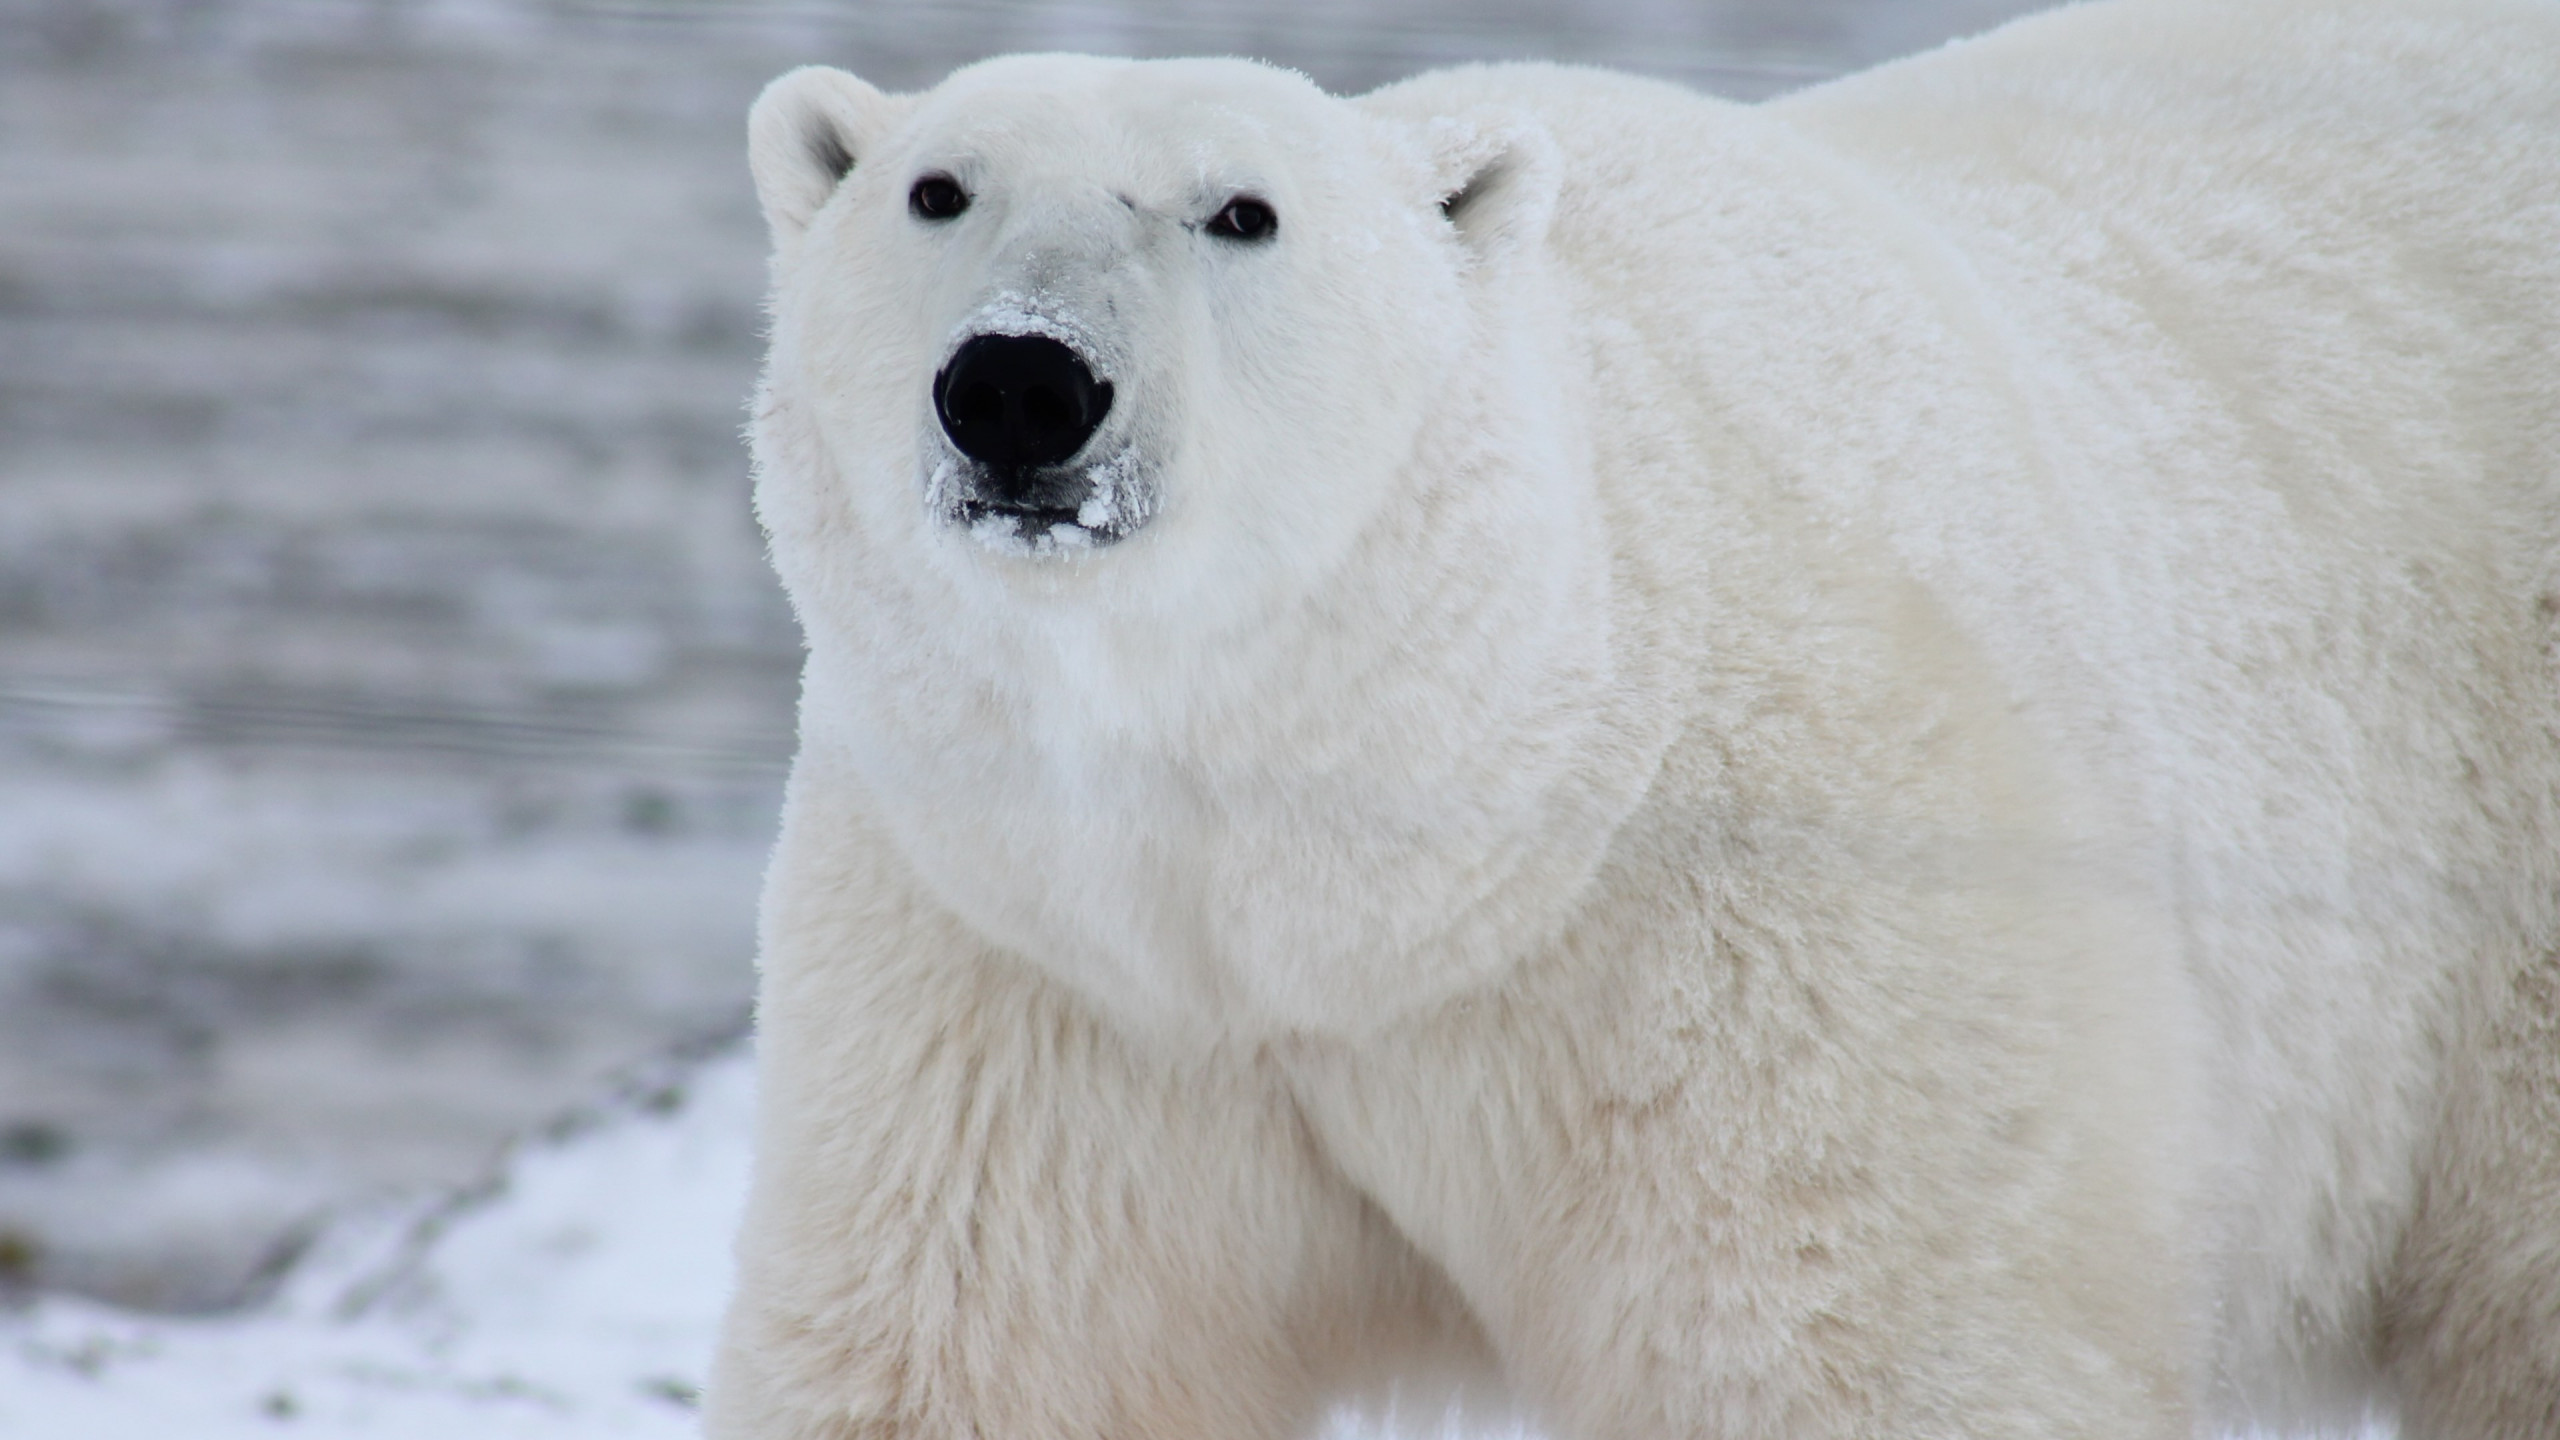 Polar bear in his environment wallpaper 2560x1440